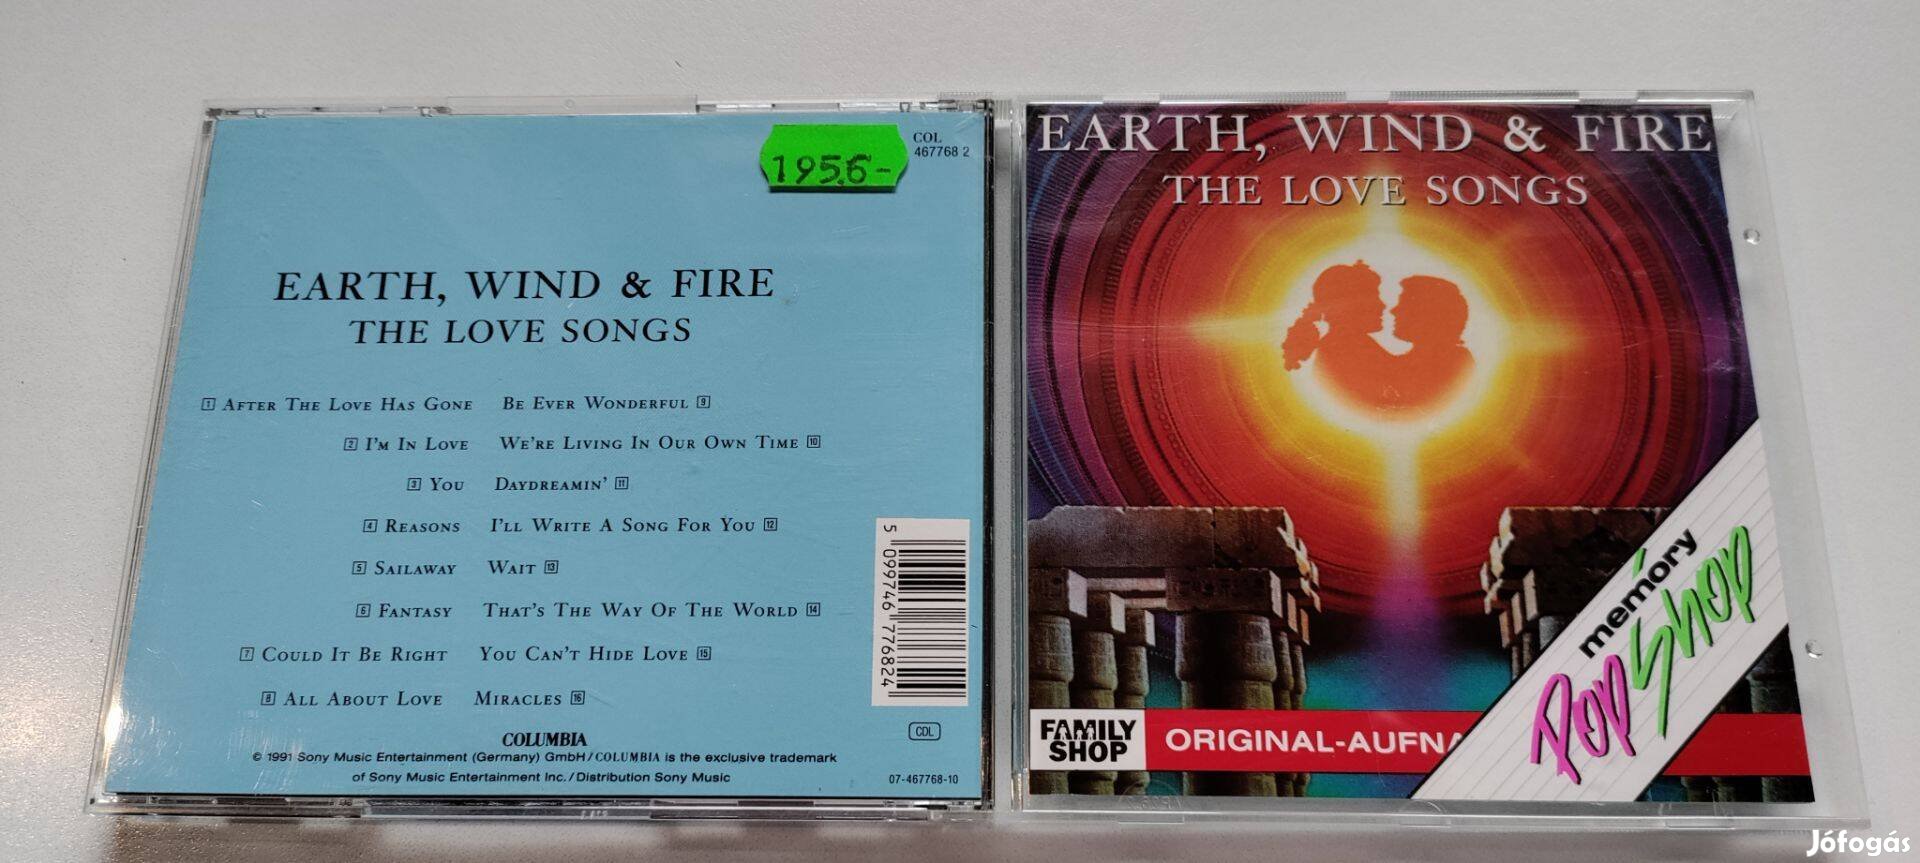 Earth, Wind & Fire - Love Songs CD